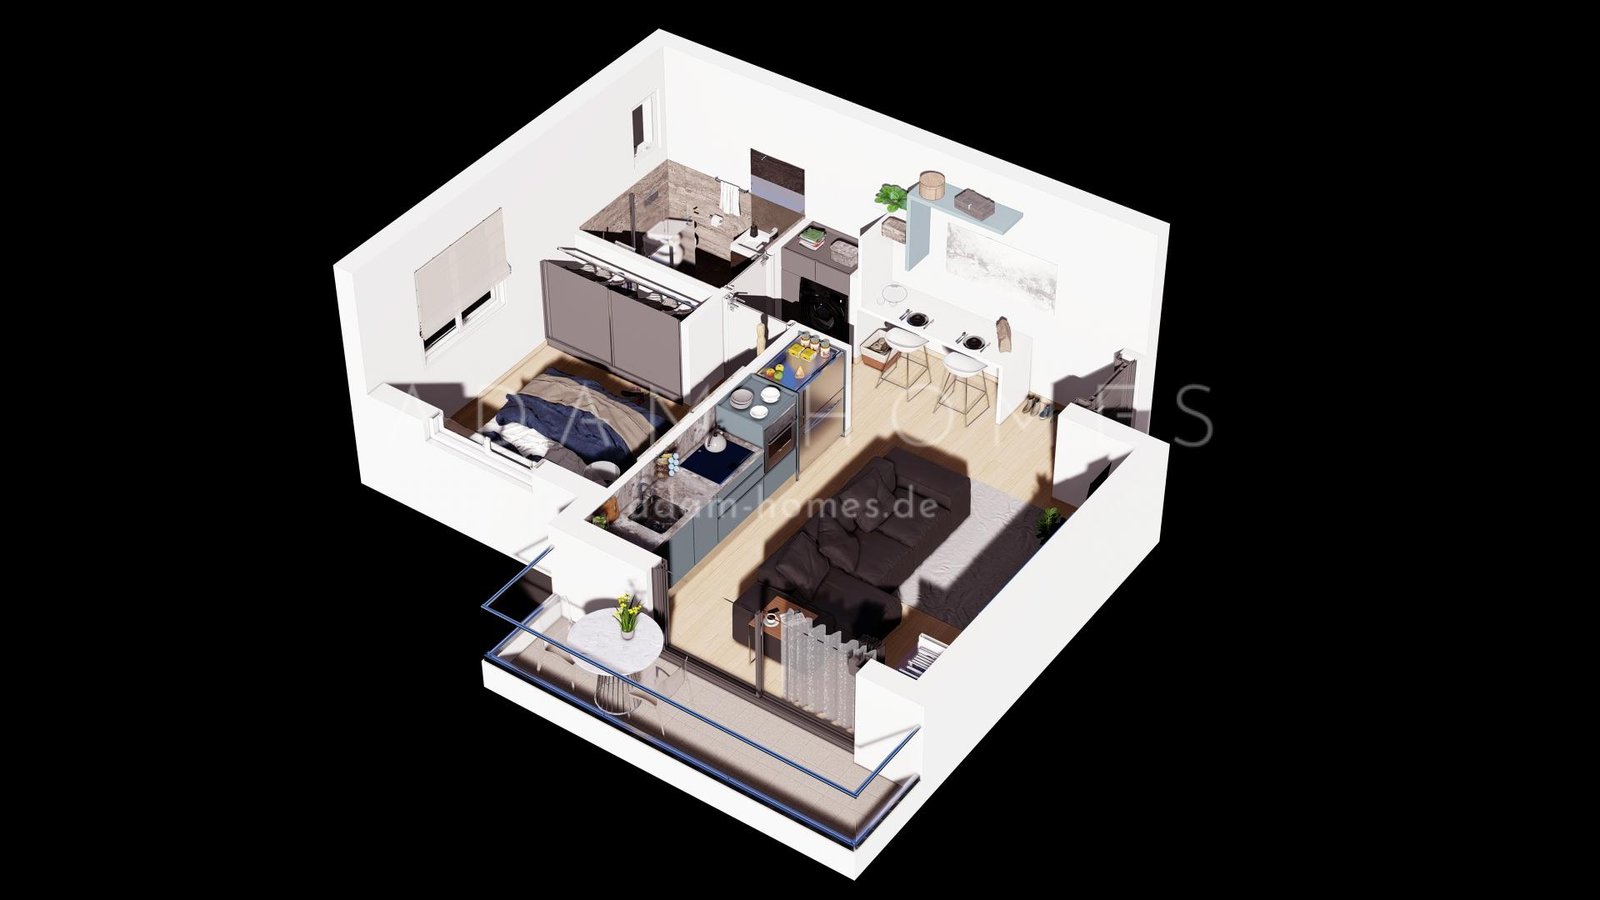 1 bedroom apartments in Iskele